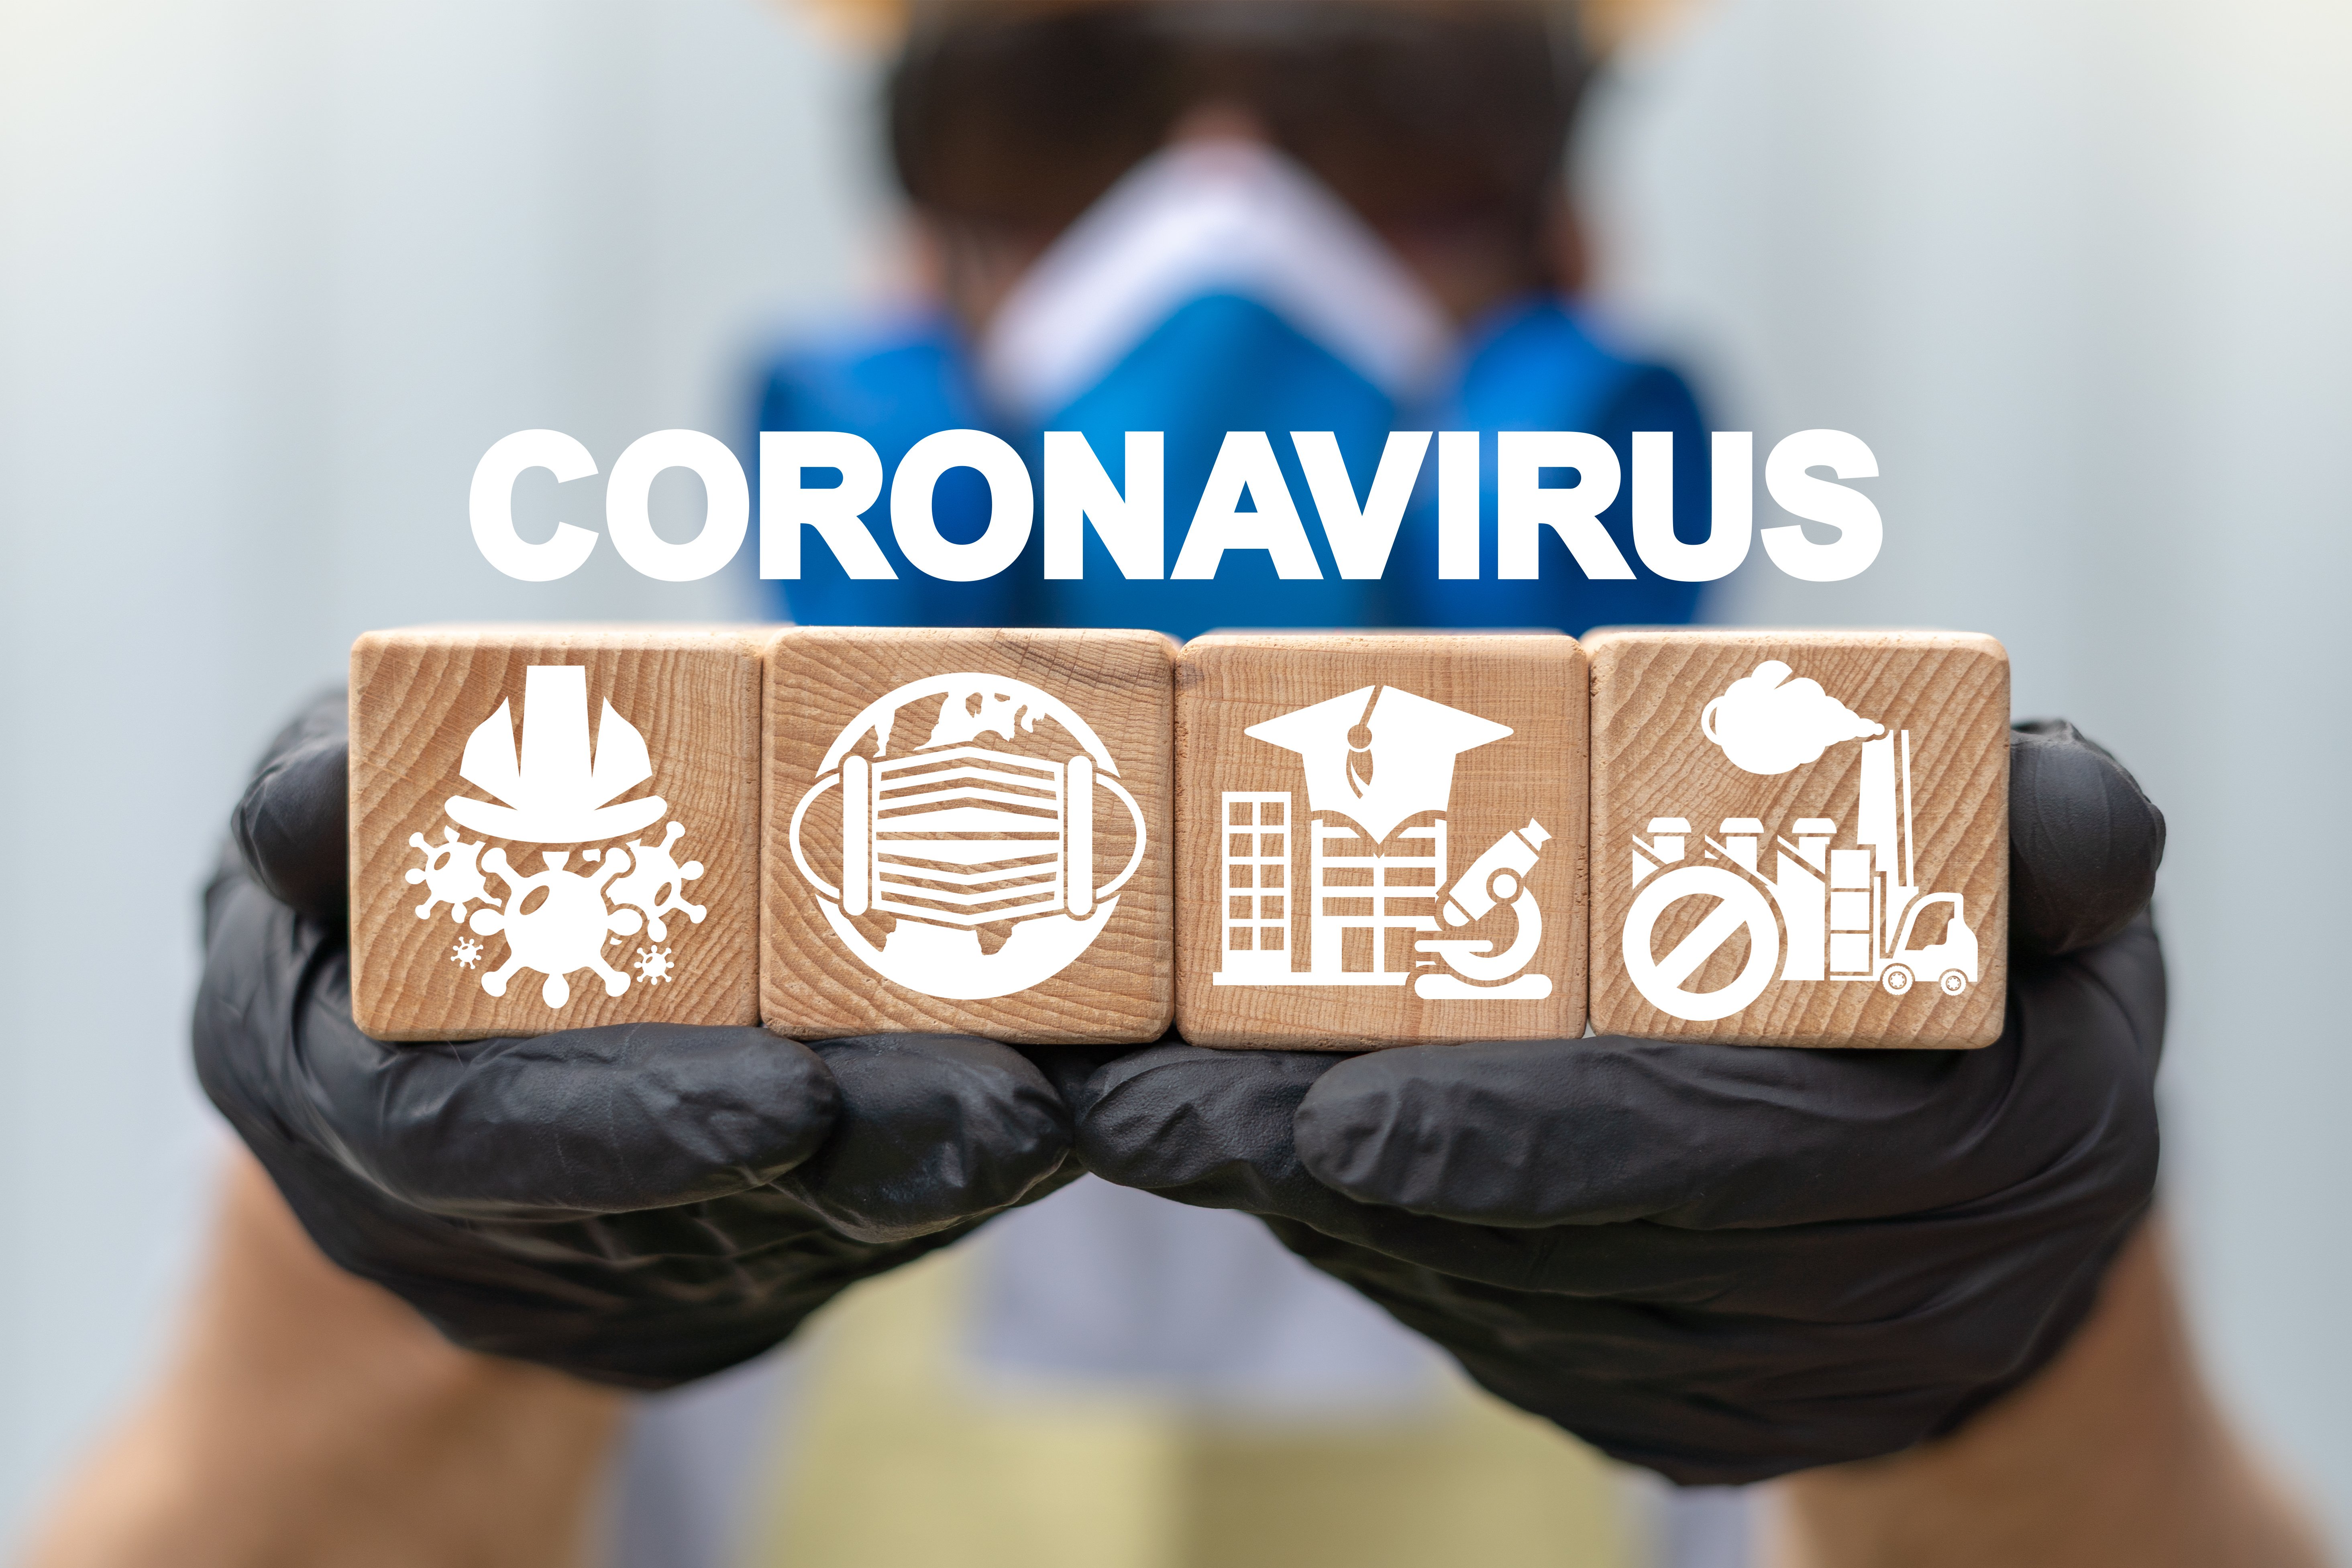 Δ1α/Γ.Π.οικ.  20651/2021: Έκτακτα μέτρα προστασίας της δημόσιας υγείας από τον κίνδυνο περαιτέρω διασποράς του κορωνοϊού COVID-19 στο σύνολο της Επικράτειας για το διάστημα από τη Δευτέρα, 5 Απριλίου 2021 και ώρα 6:00 έως και τη Δευτέρα, 12 Απριλίου 2021 και ώρα 6:00